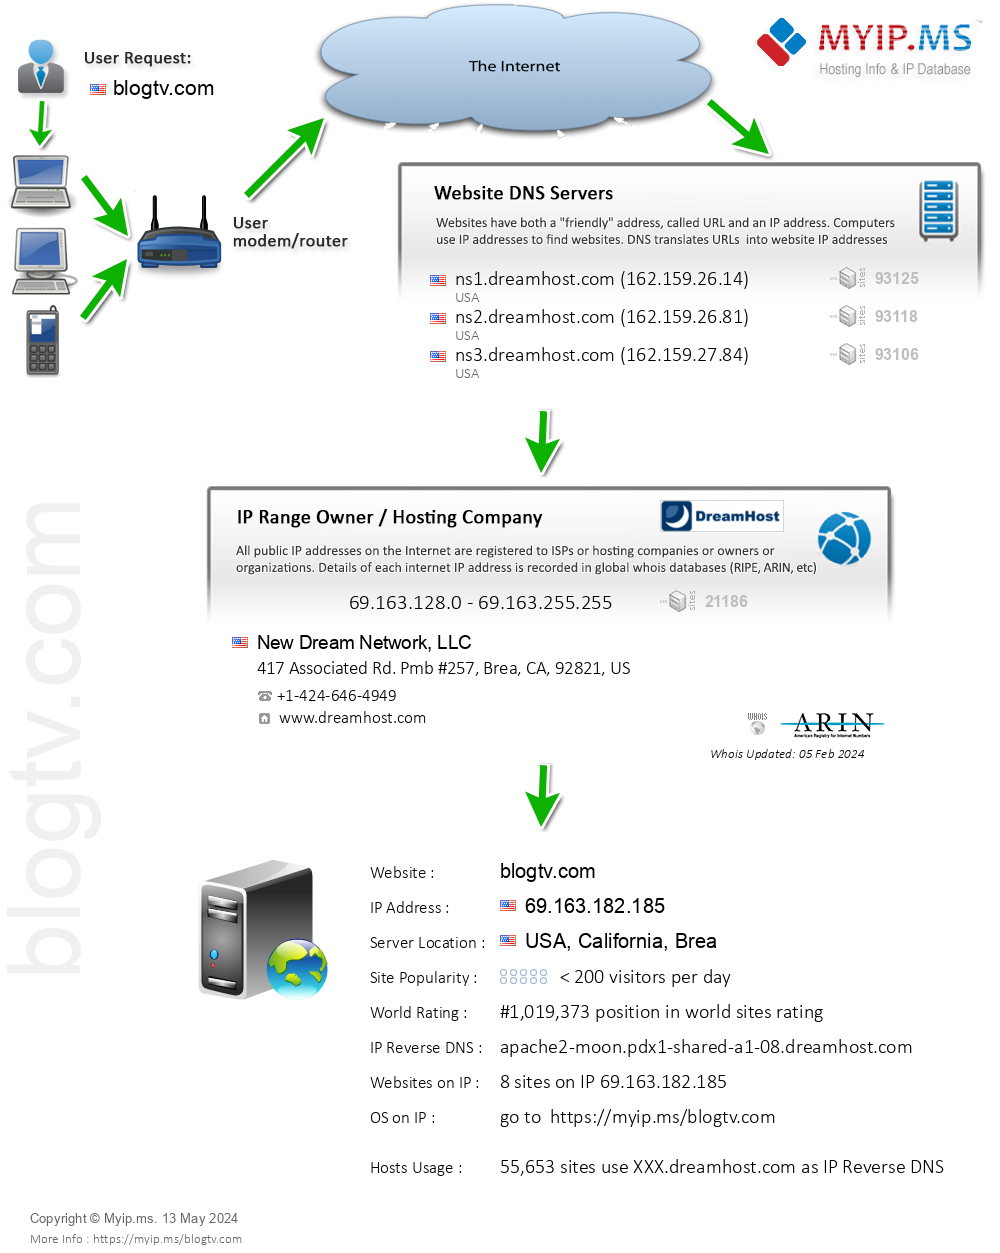 Blogtv.com - Website Hosting Visual IP Diagram